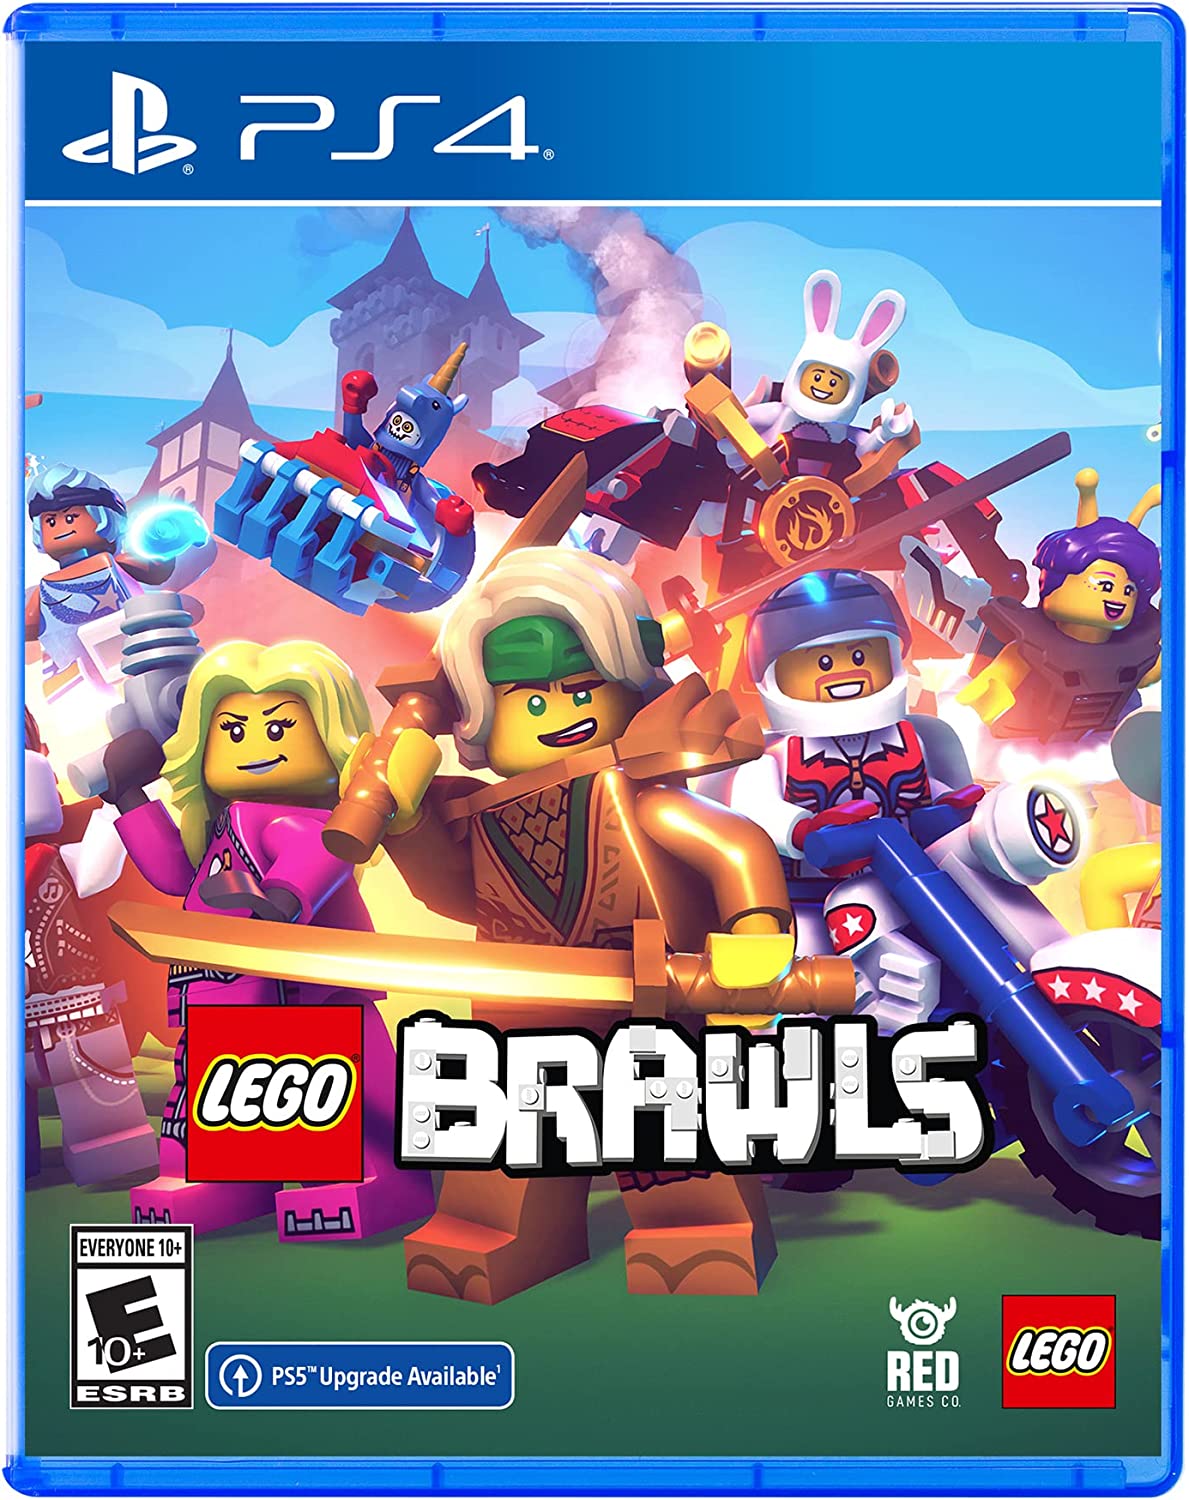 Lego Brawls PS4